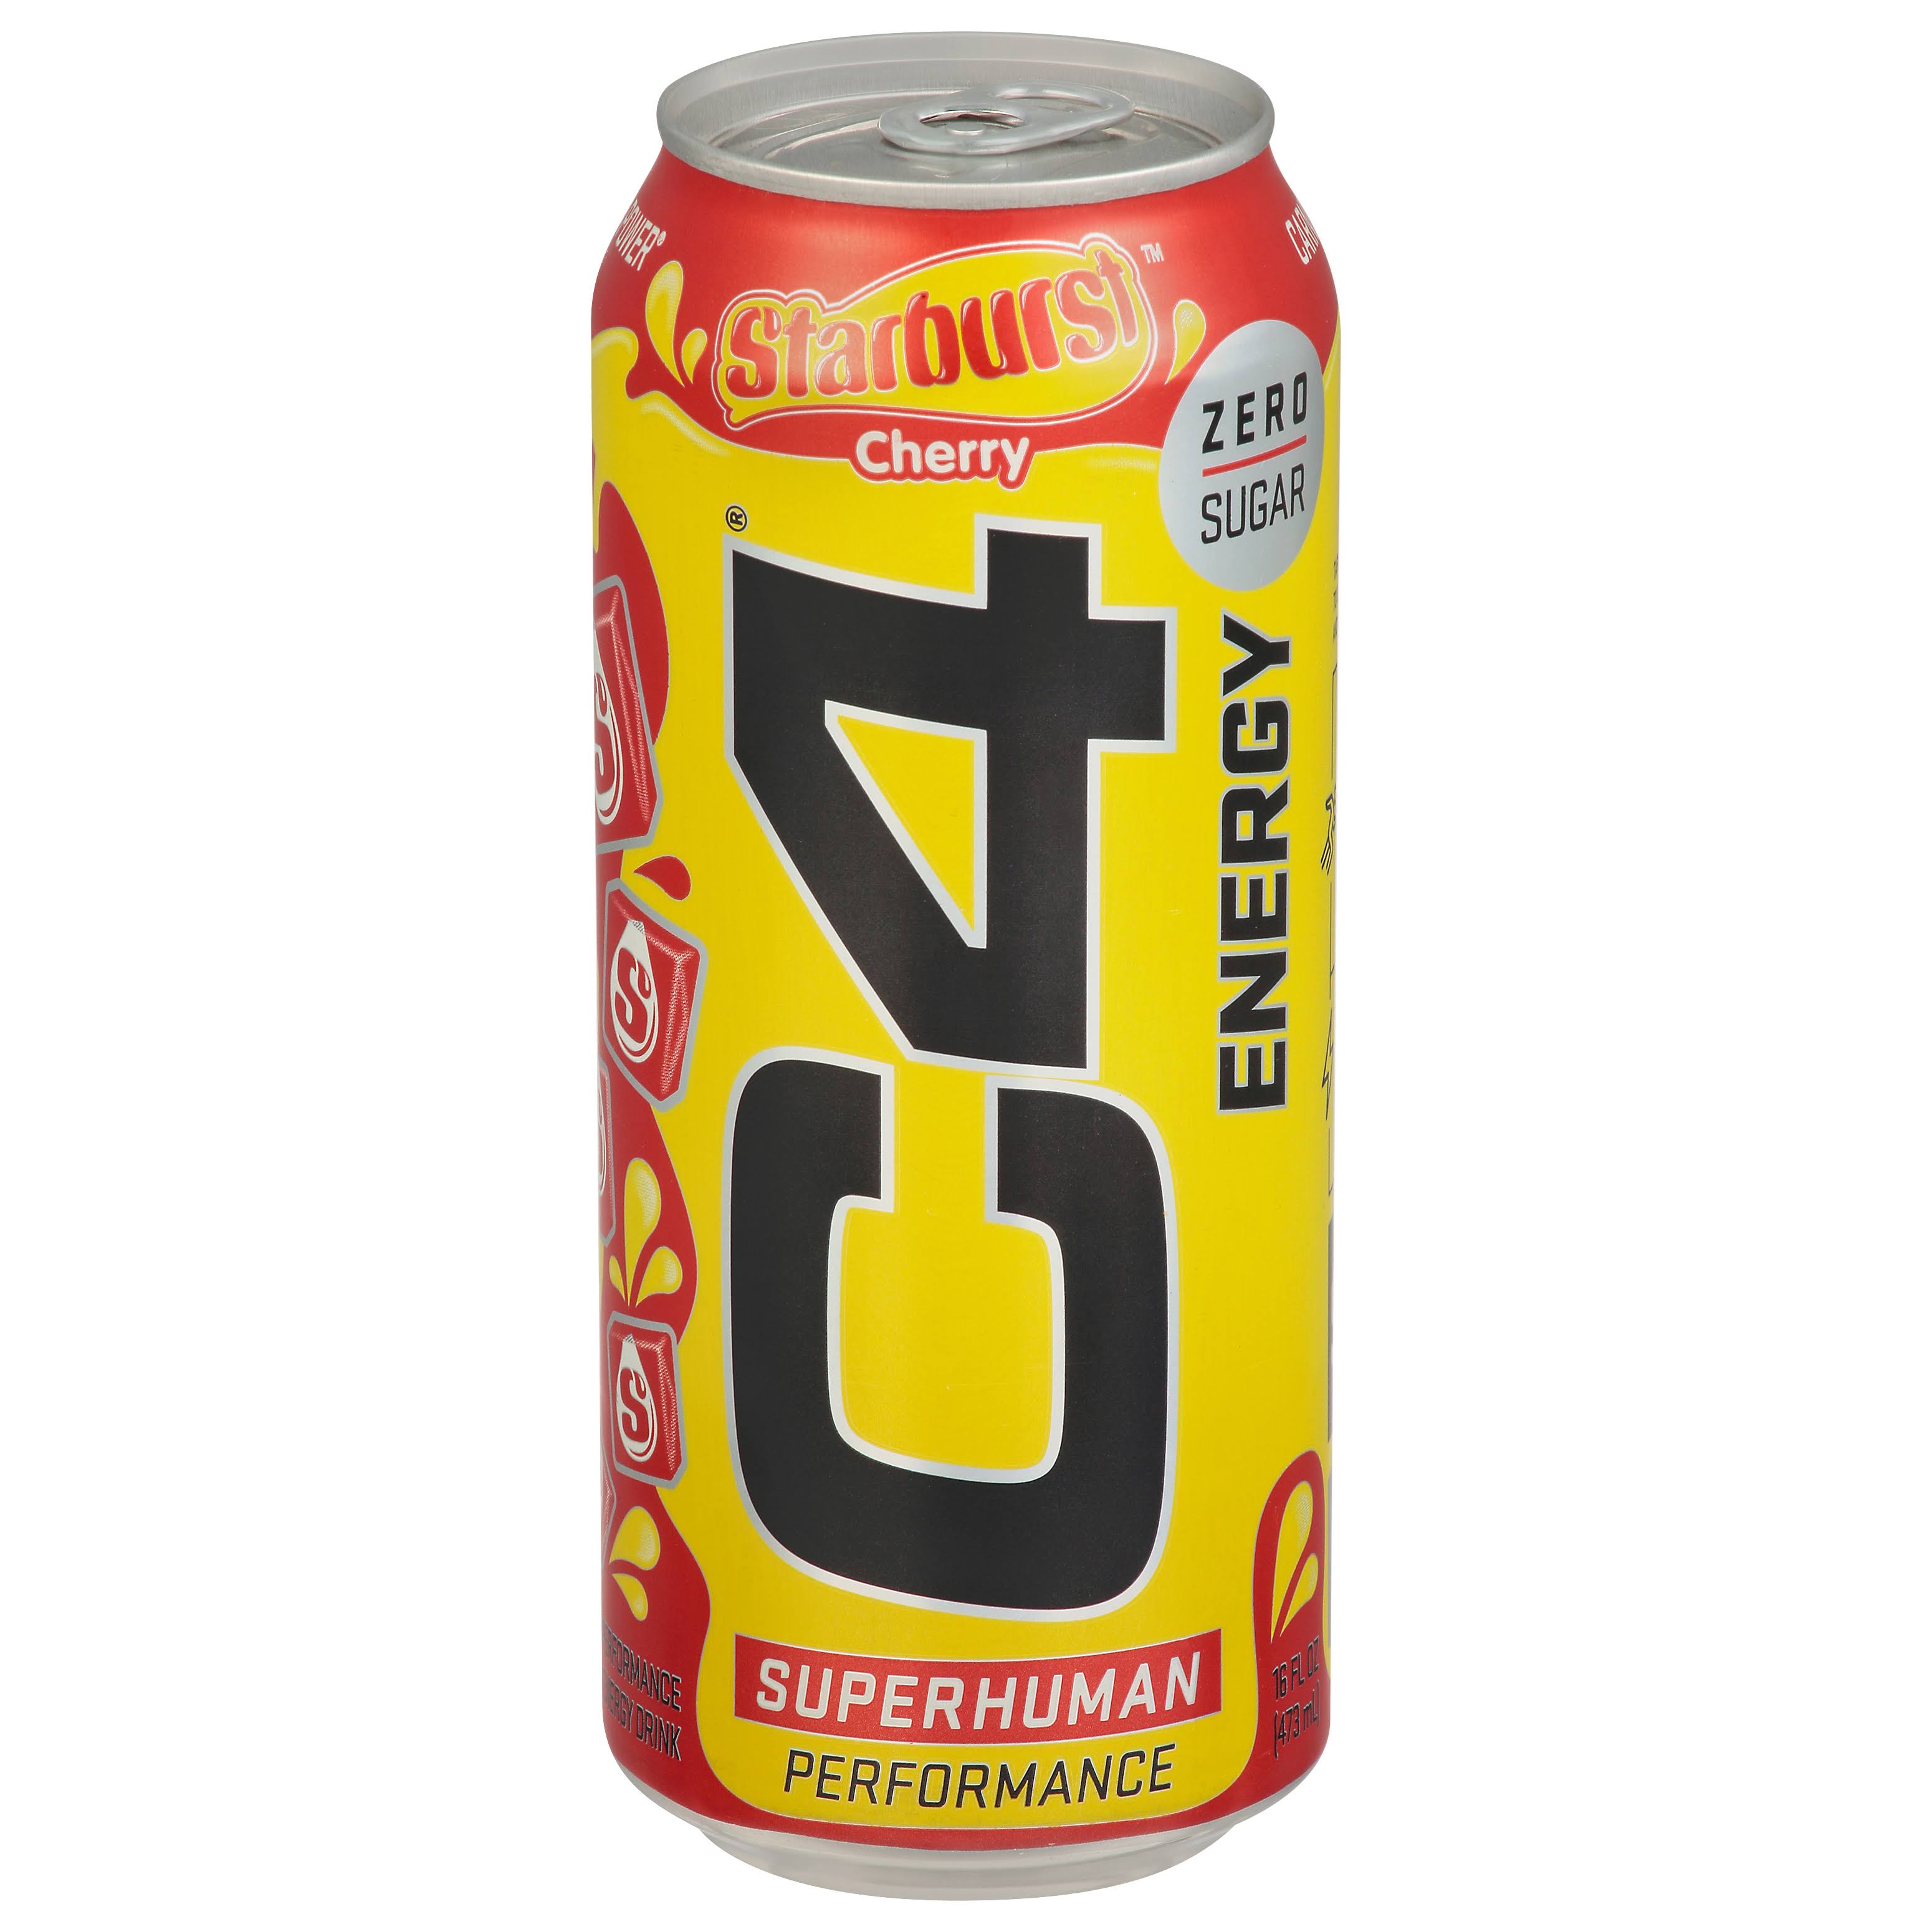 C4 Starburst Energy Drink, Zero Sugar, Cherry - 16 fl oz